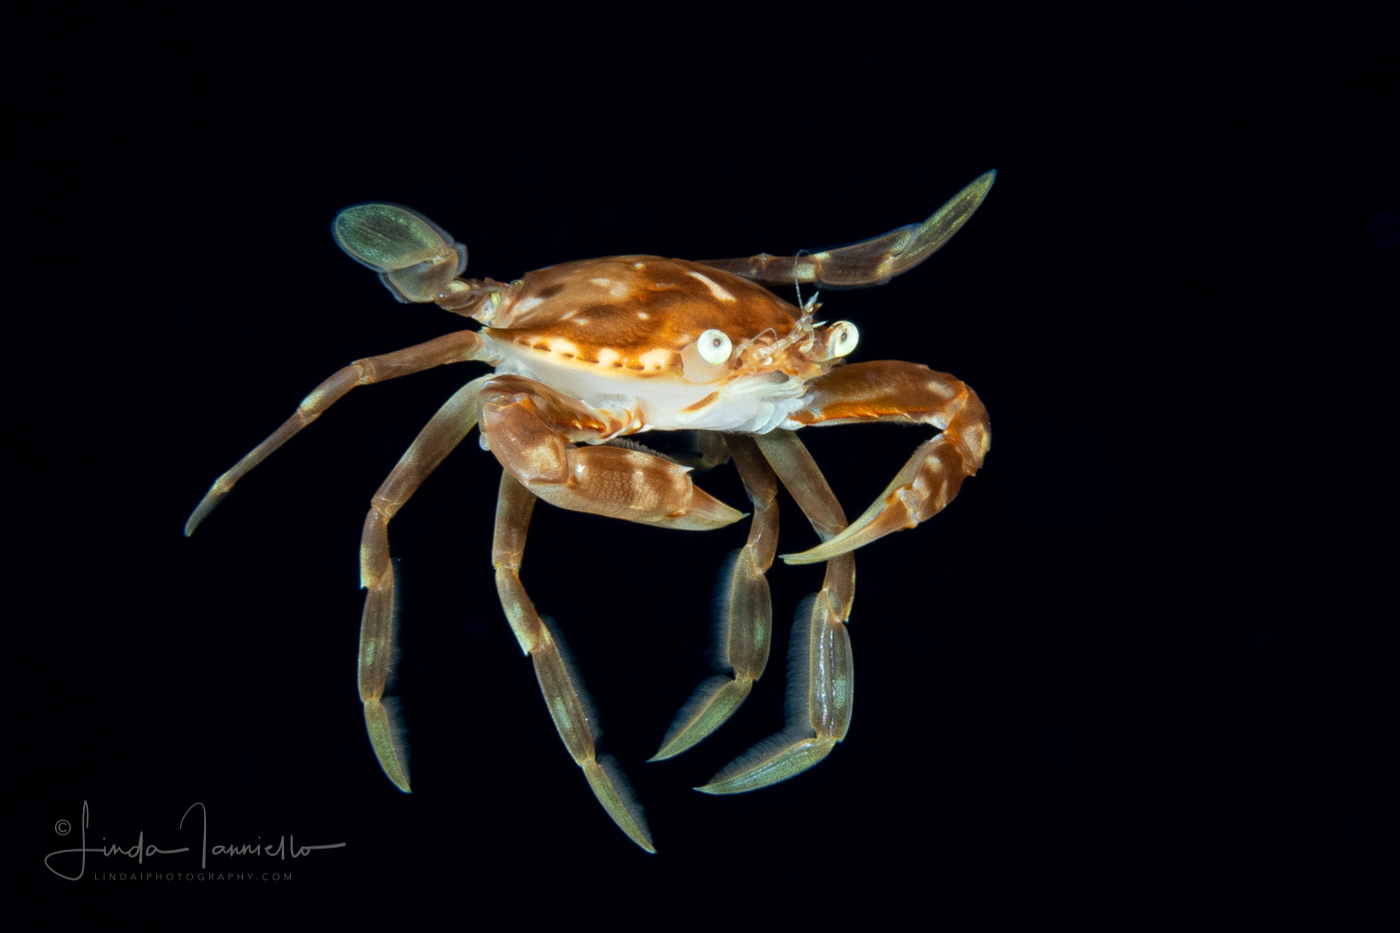 Sargassum Swimming Crab - Portunidae Family - Probably Portunus sayi